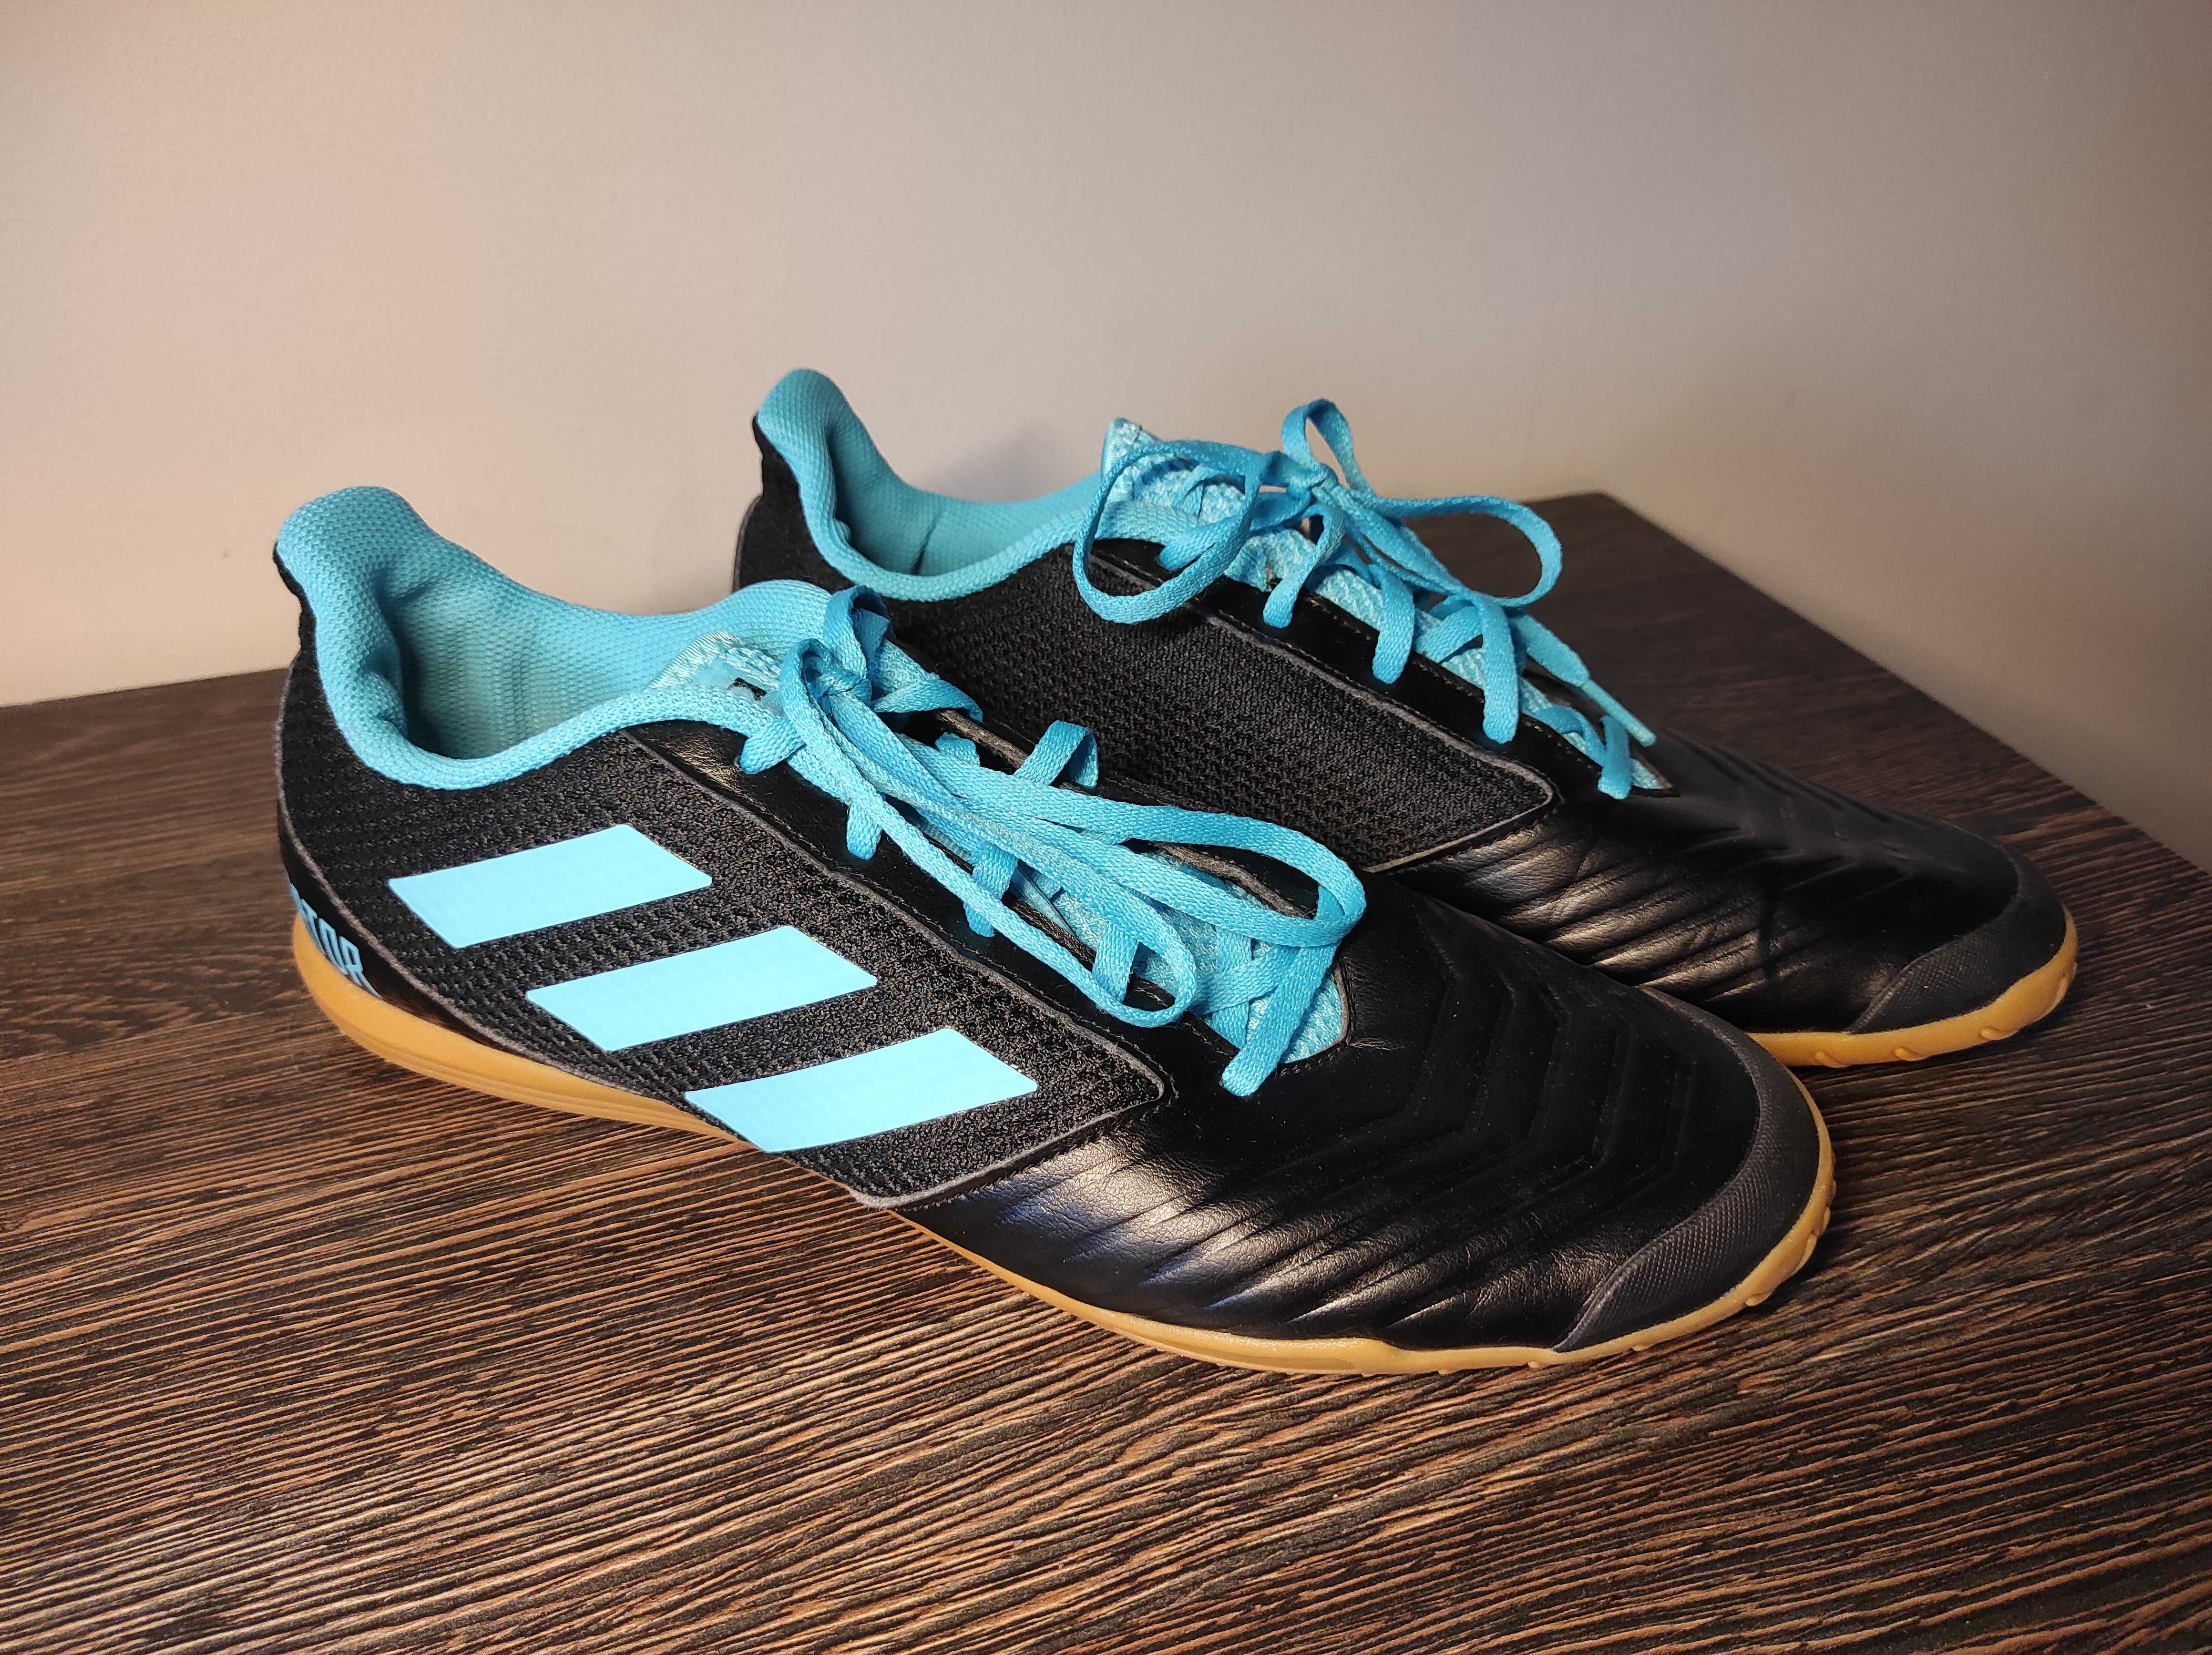 Buty piłkarskie Adidas Predator 19.4 Sala w rozmiarze 44.